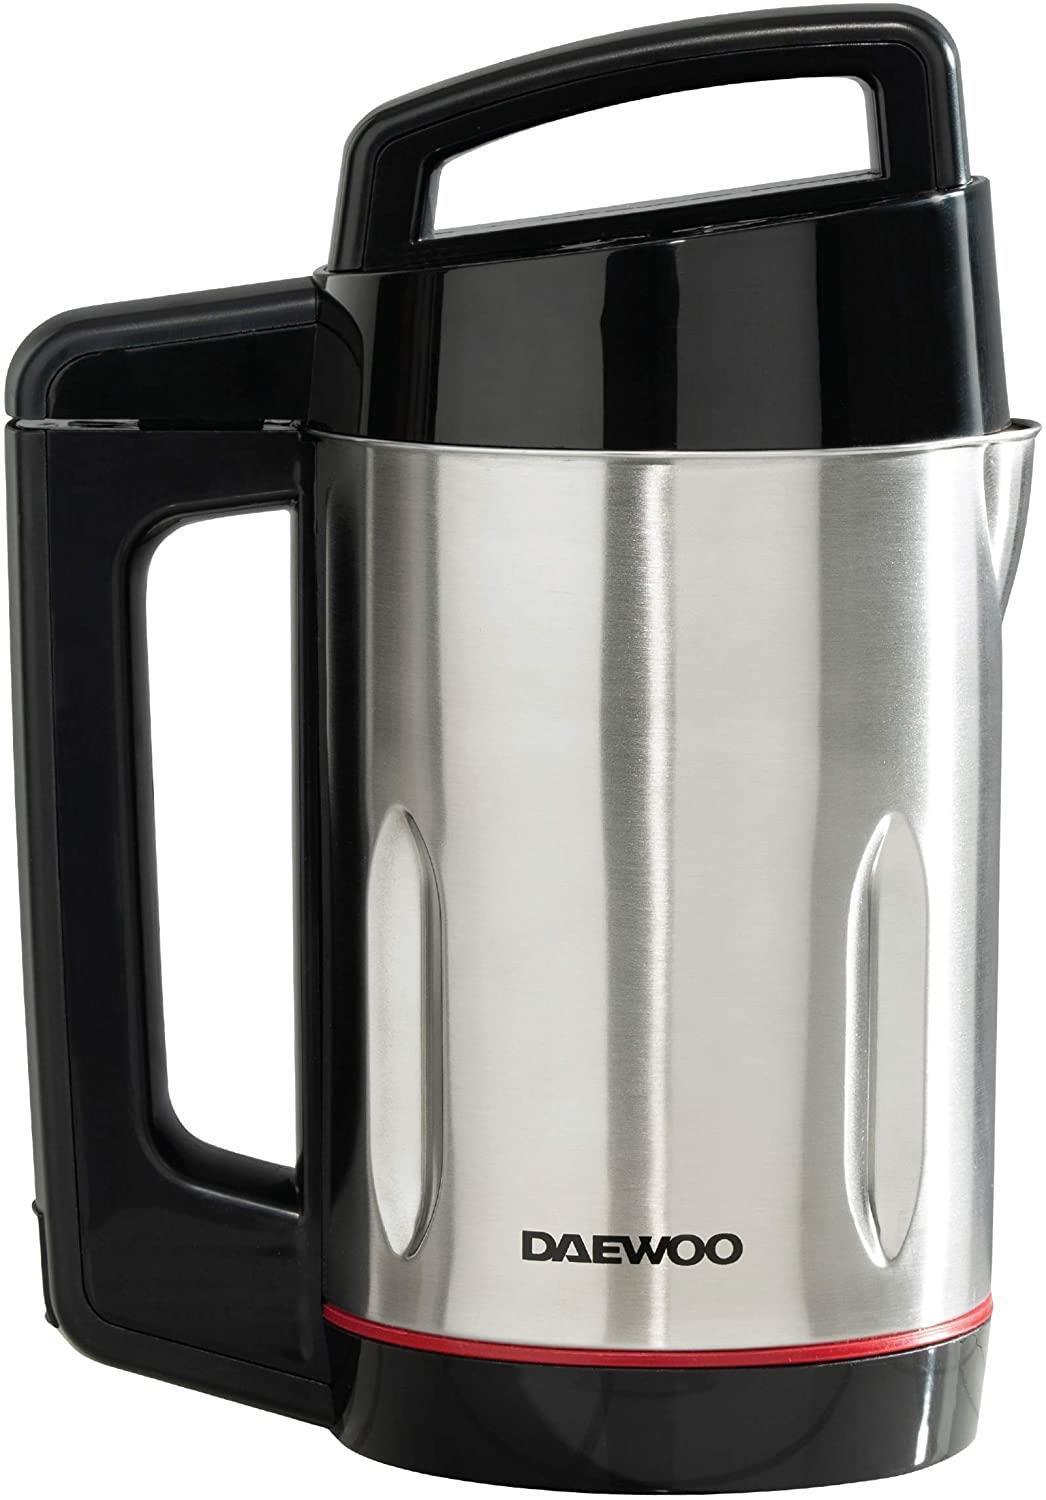 Daewoo 1.6L Soup Maker 1000w- SDA1714